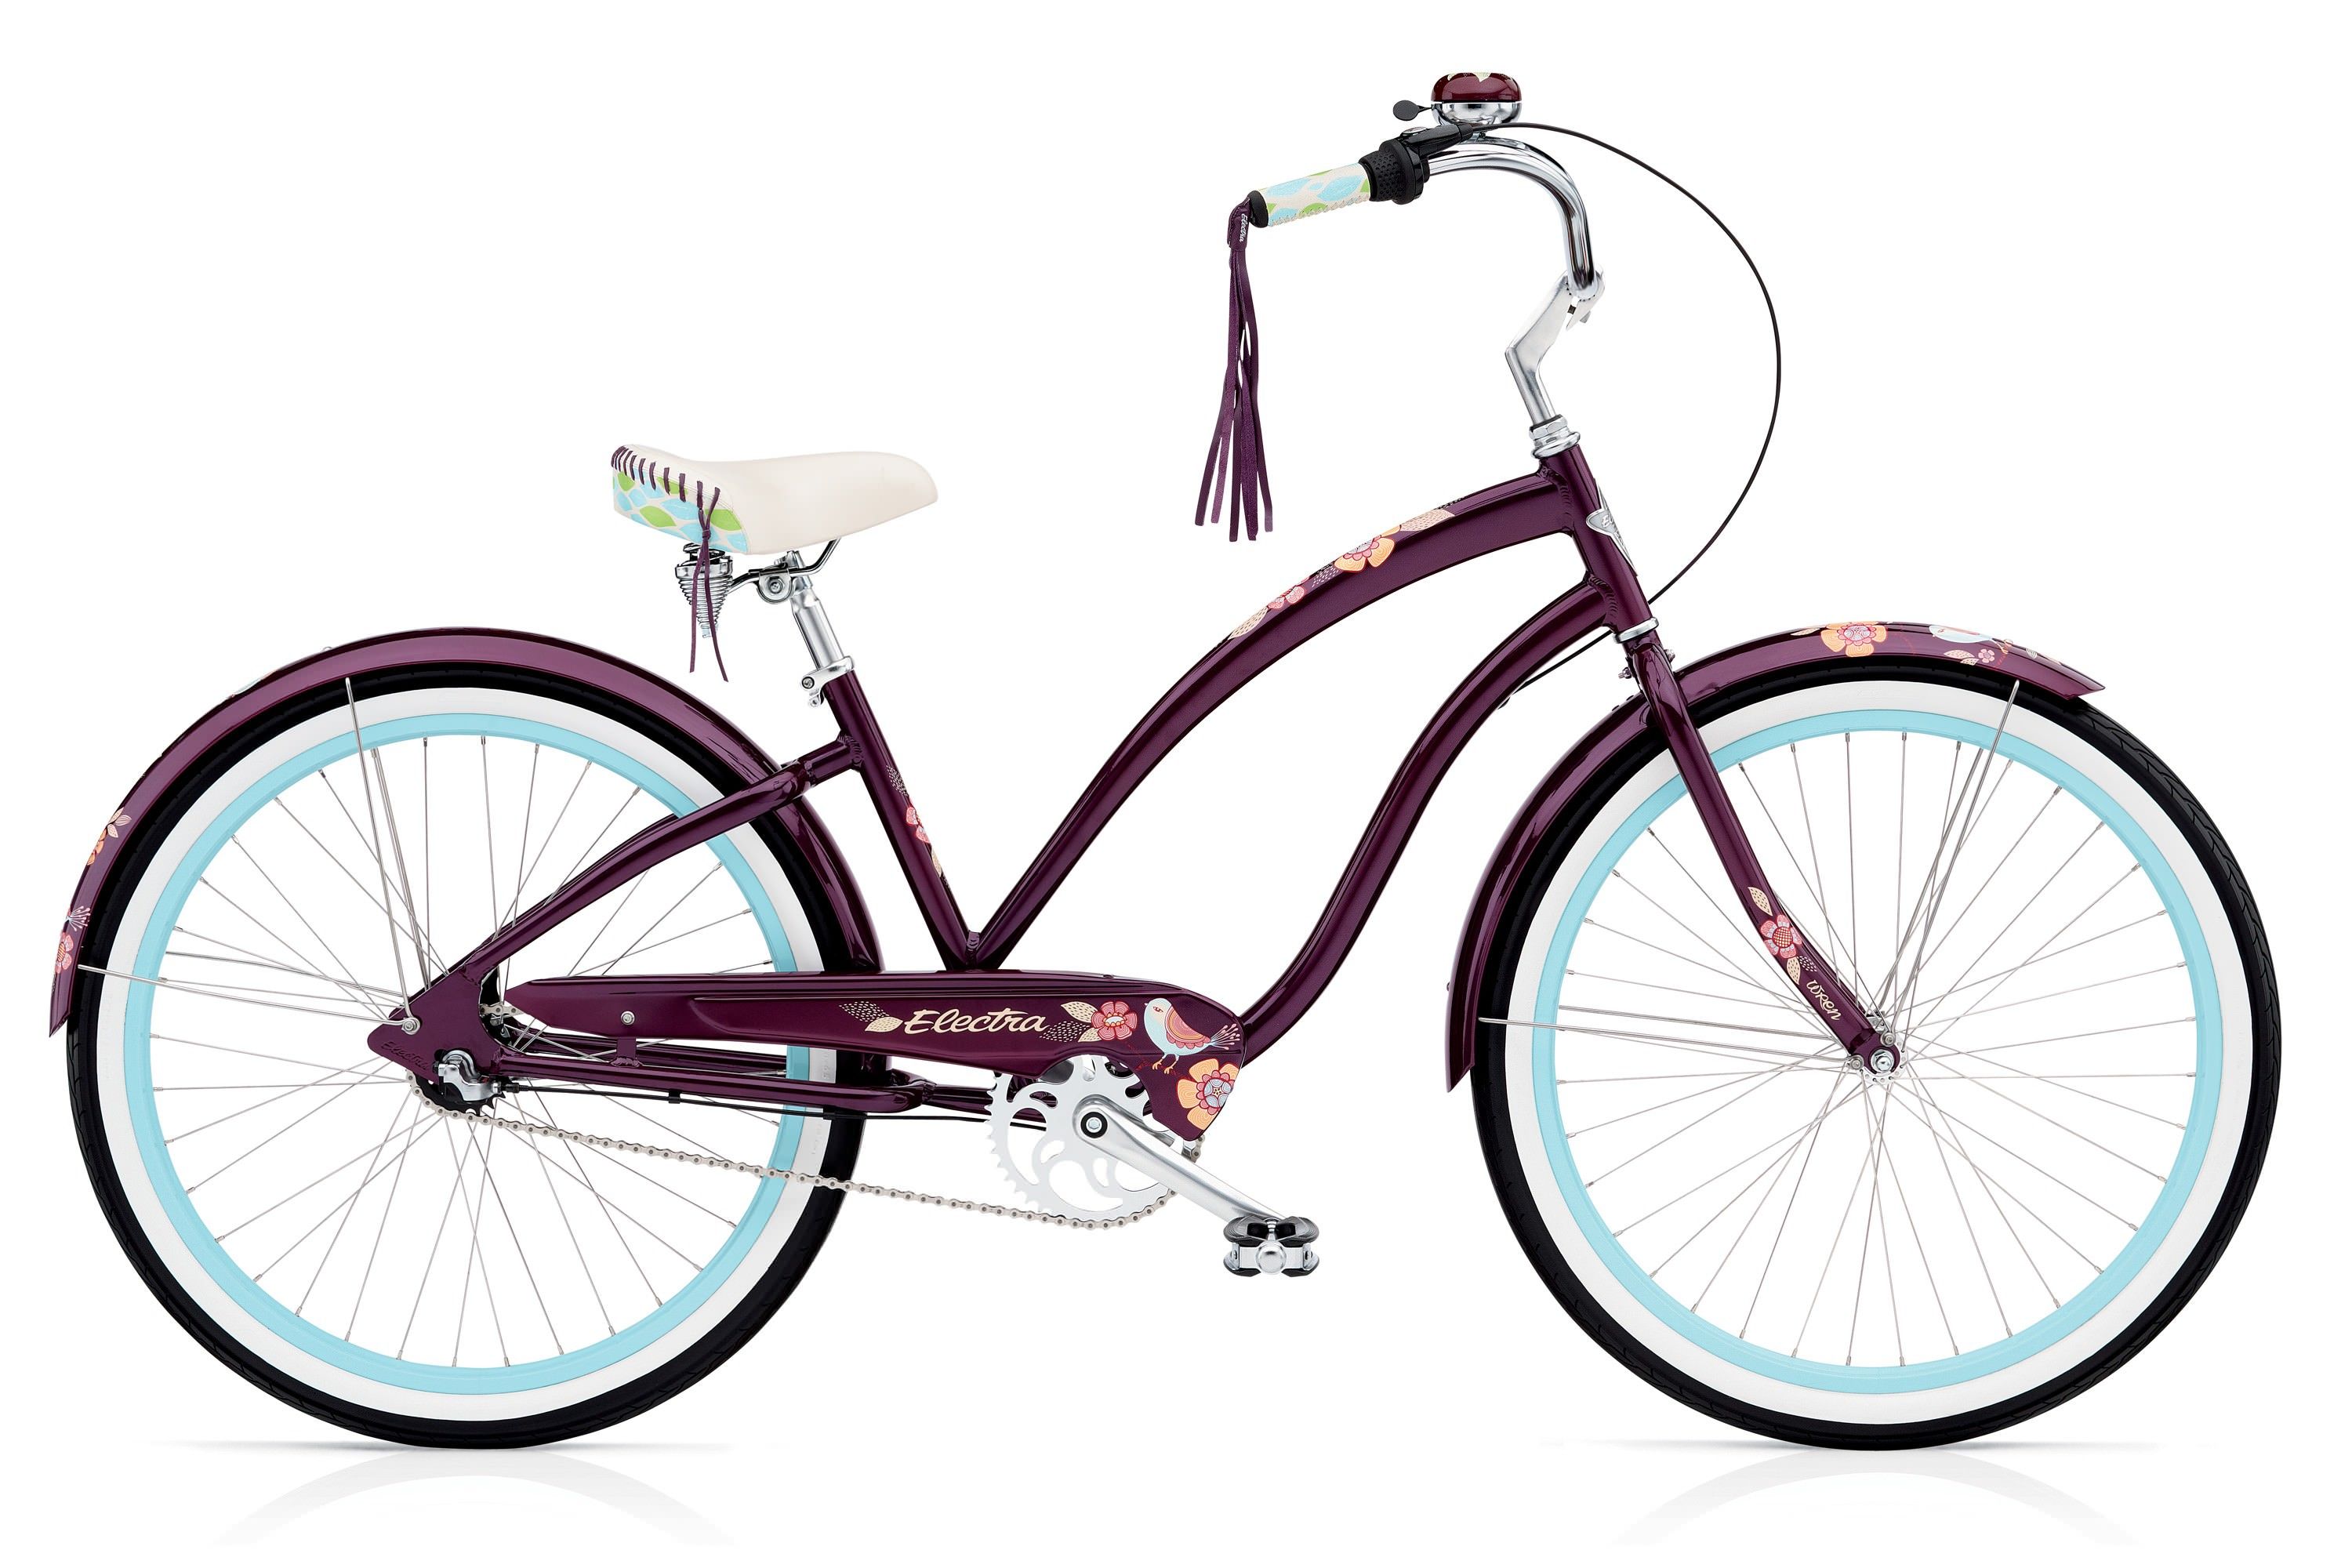  Велосипед Electra Cruiser Wren 3i Ladies 2017